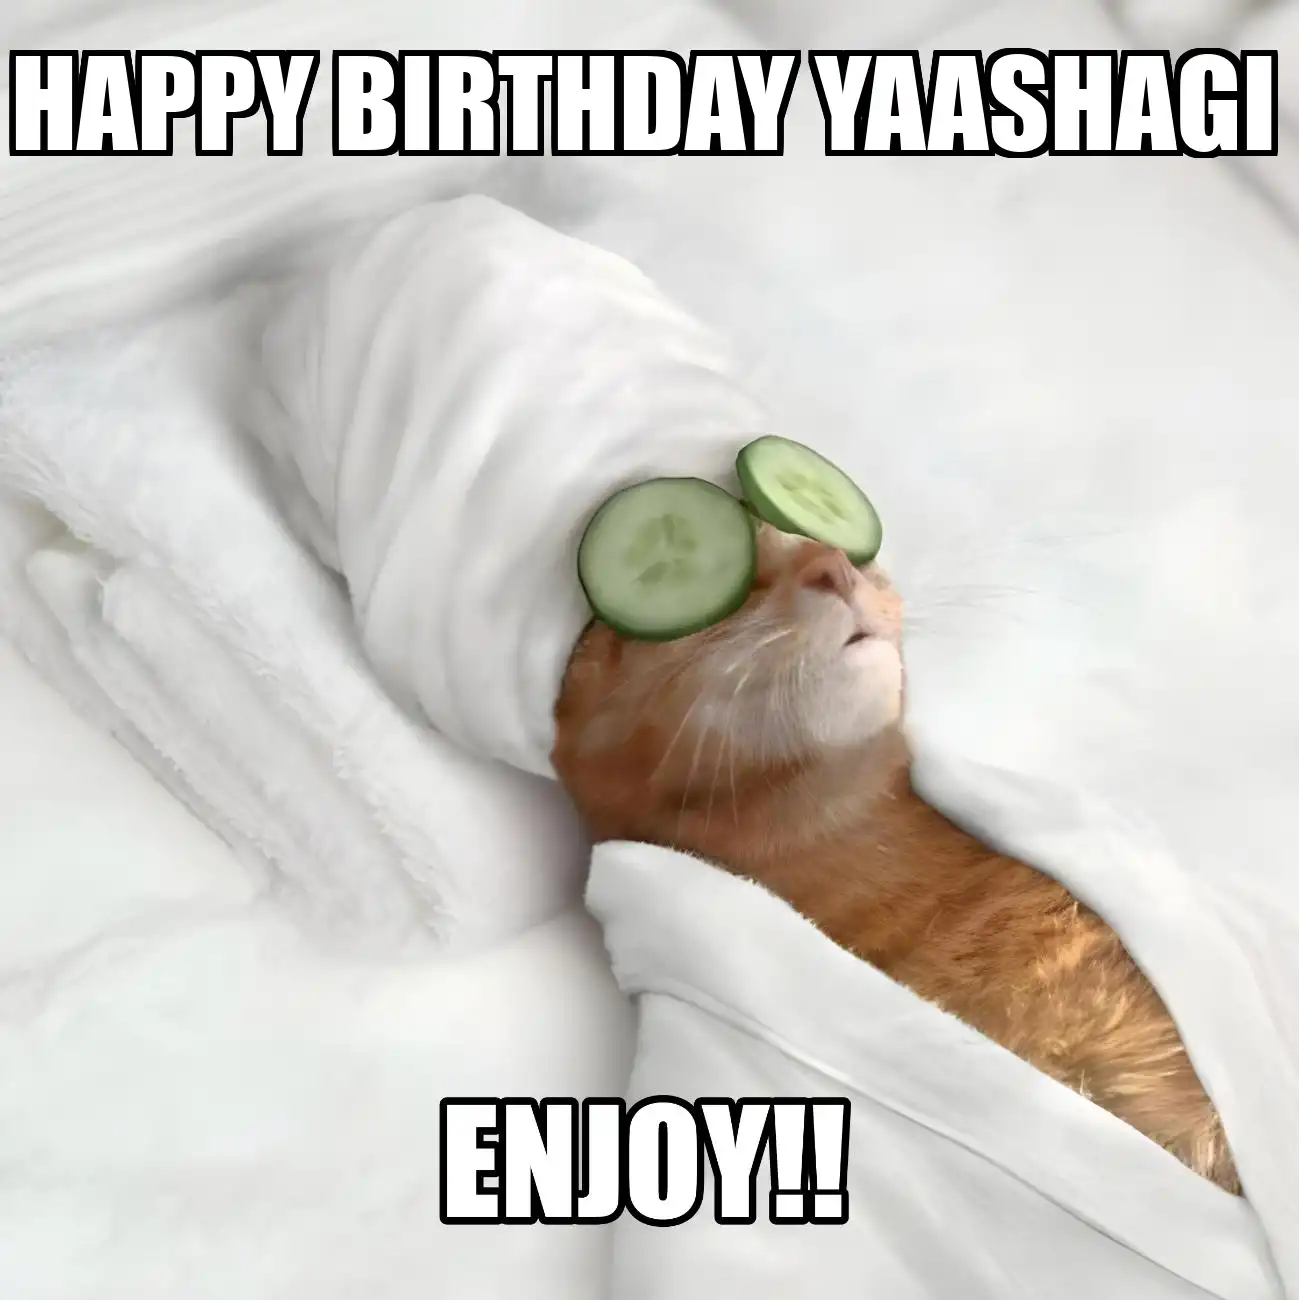 Happy Birthday Yaashagi Enjoy Cat Meme